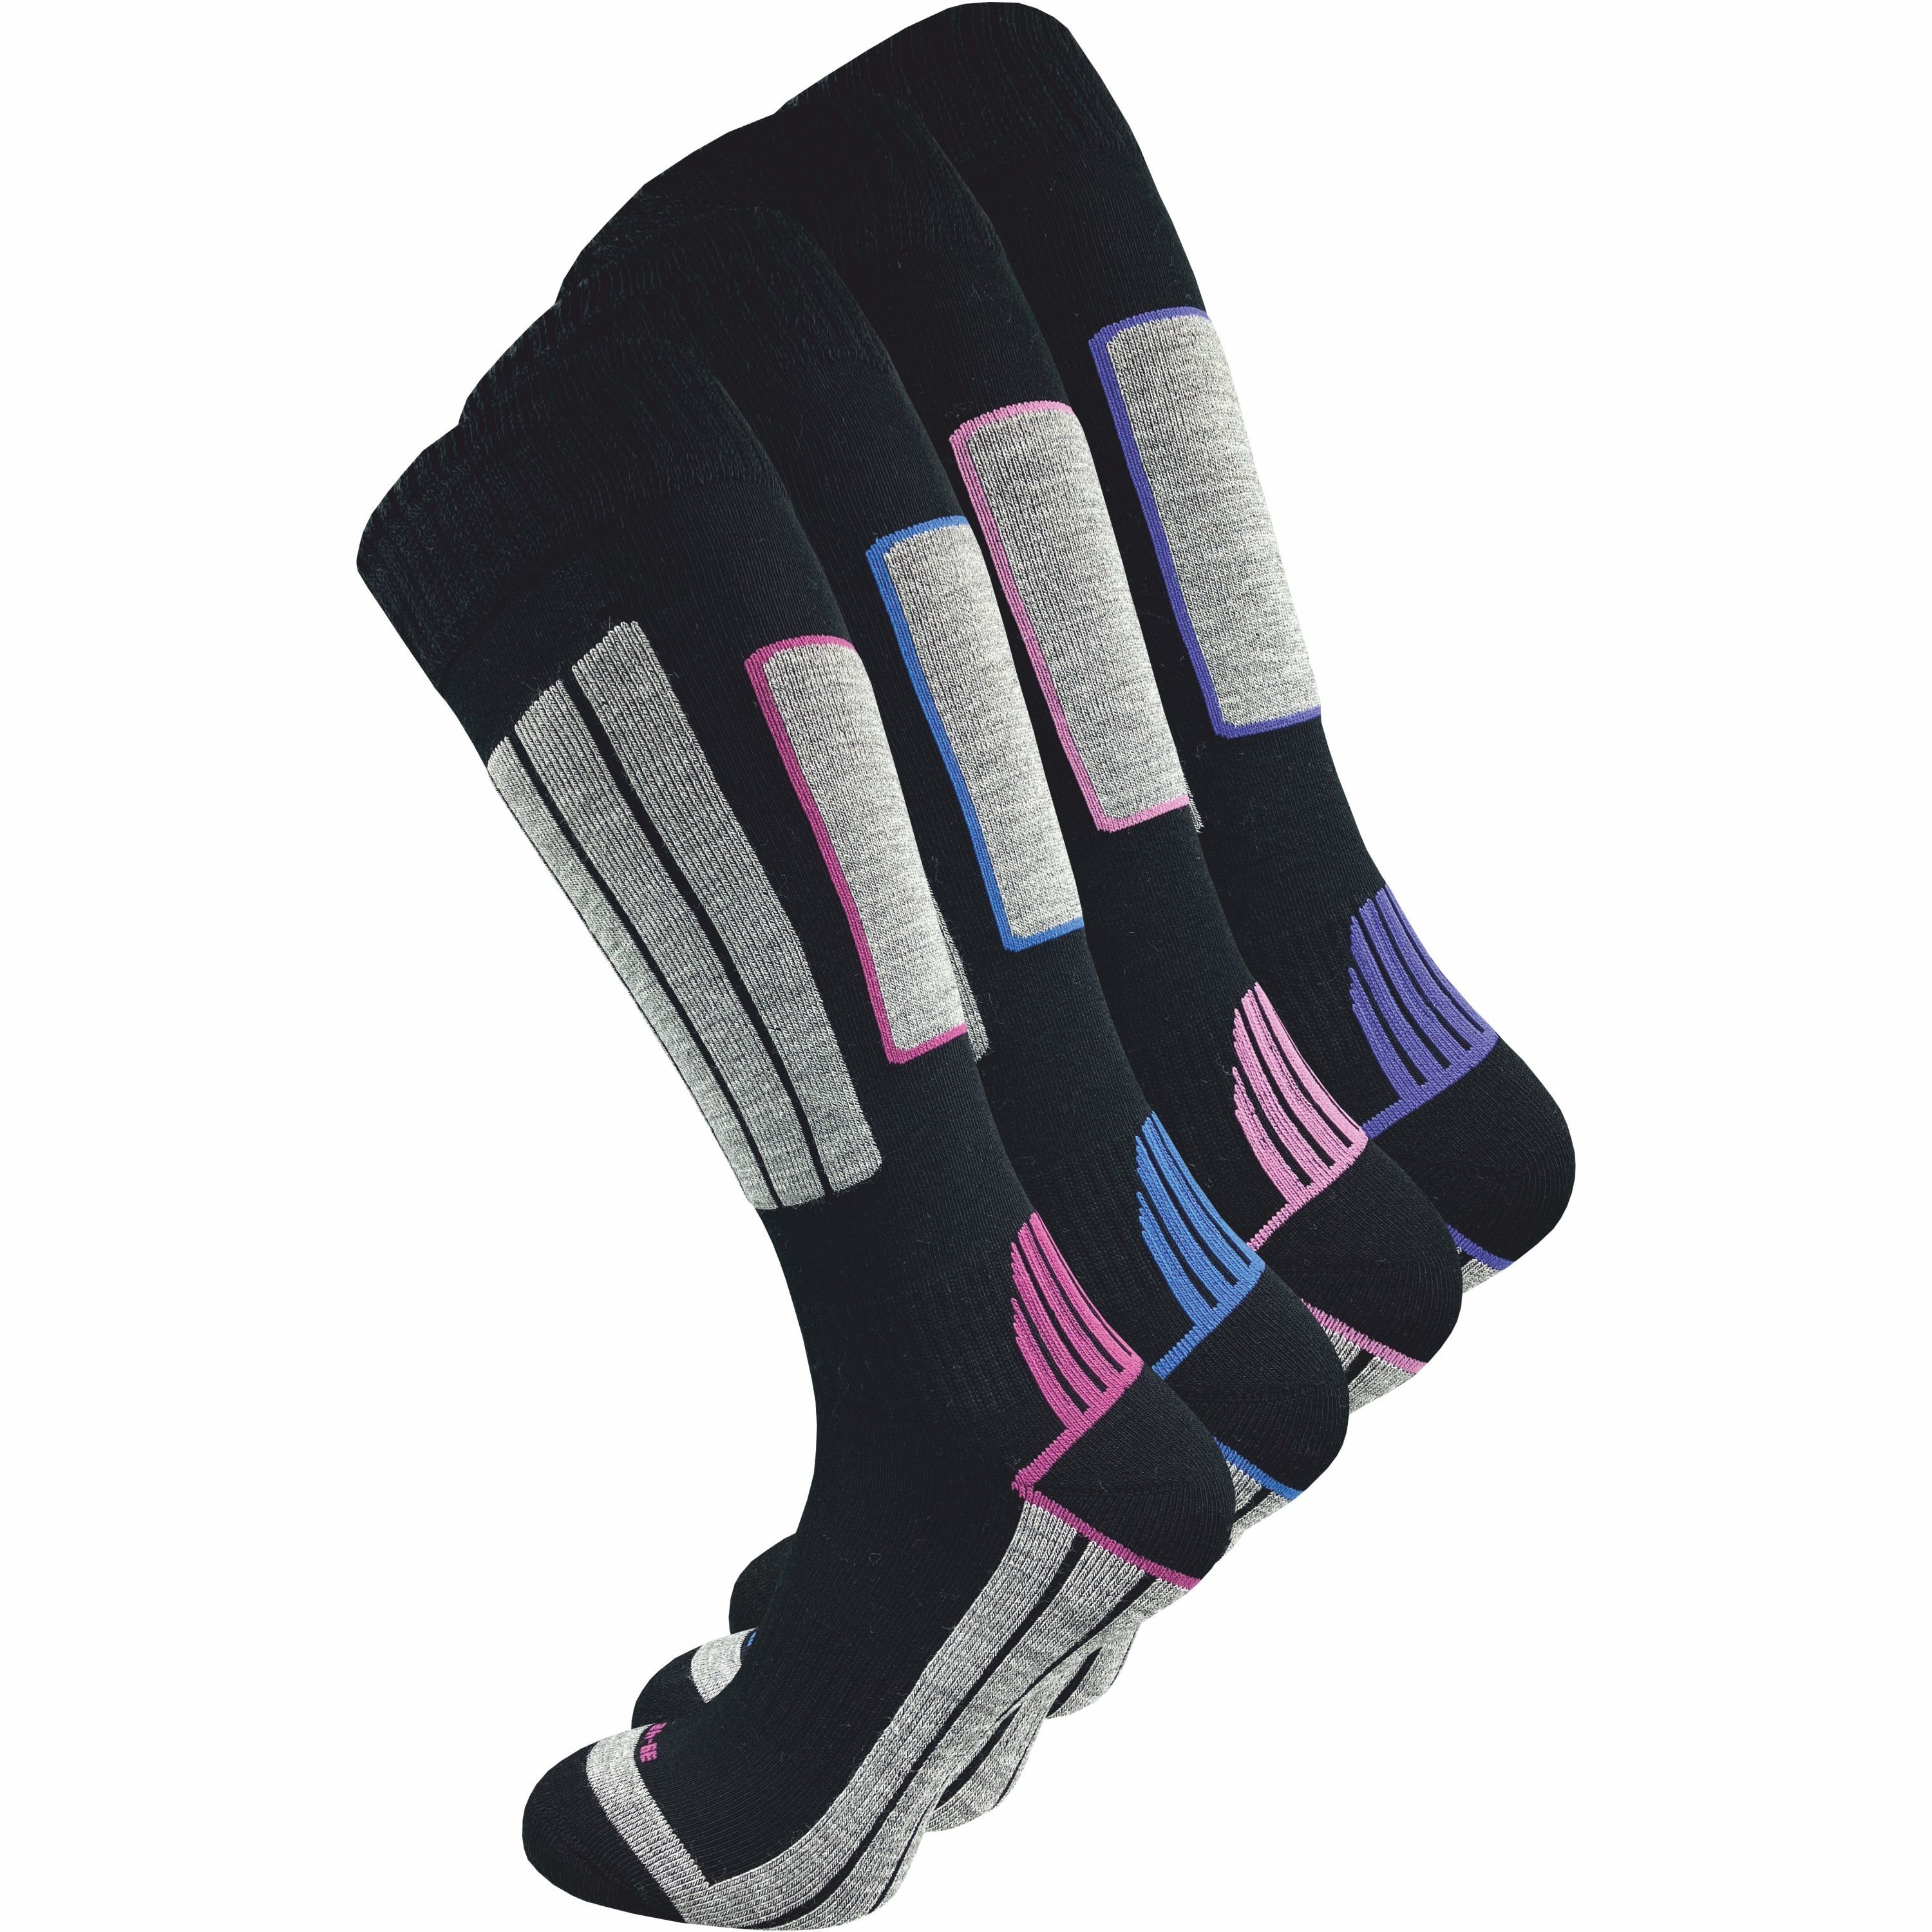 GAWILO Skisocken für Damen mit wärmender Wolle und spezieller Funktionspolsterung (4 Paar) Spezielle Konstruktion sorgt für Stabilität & hält Füße warm & trocken